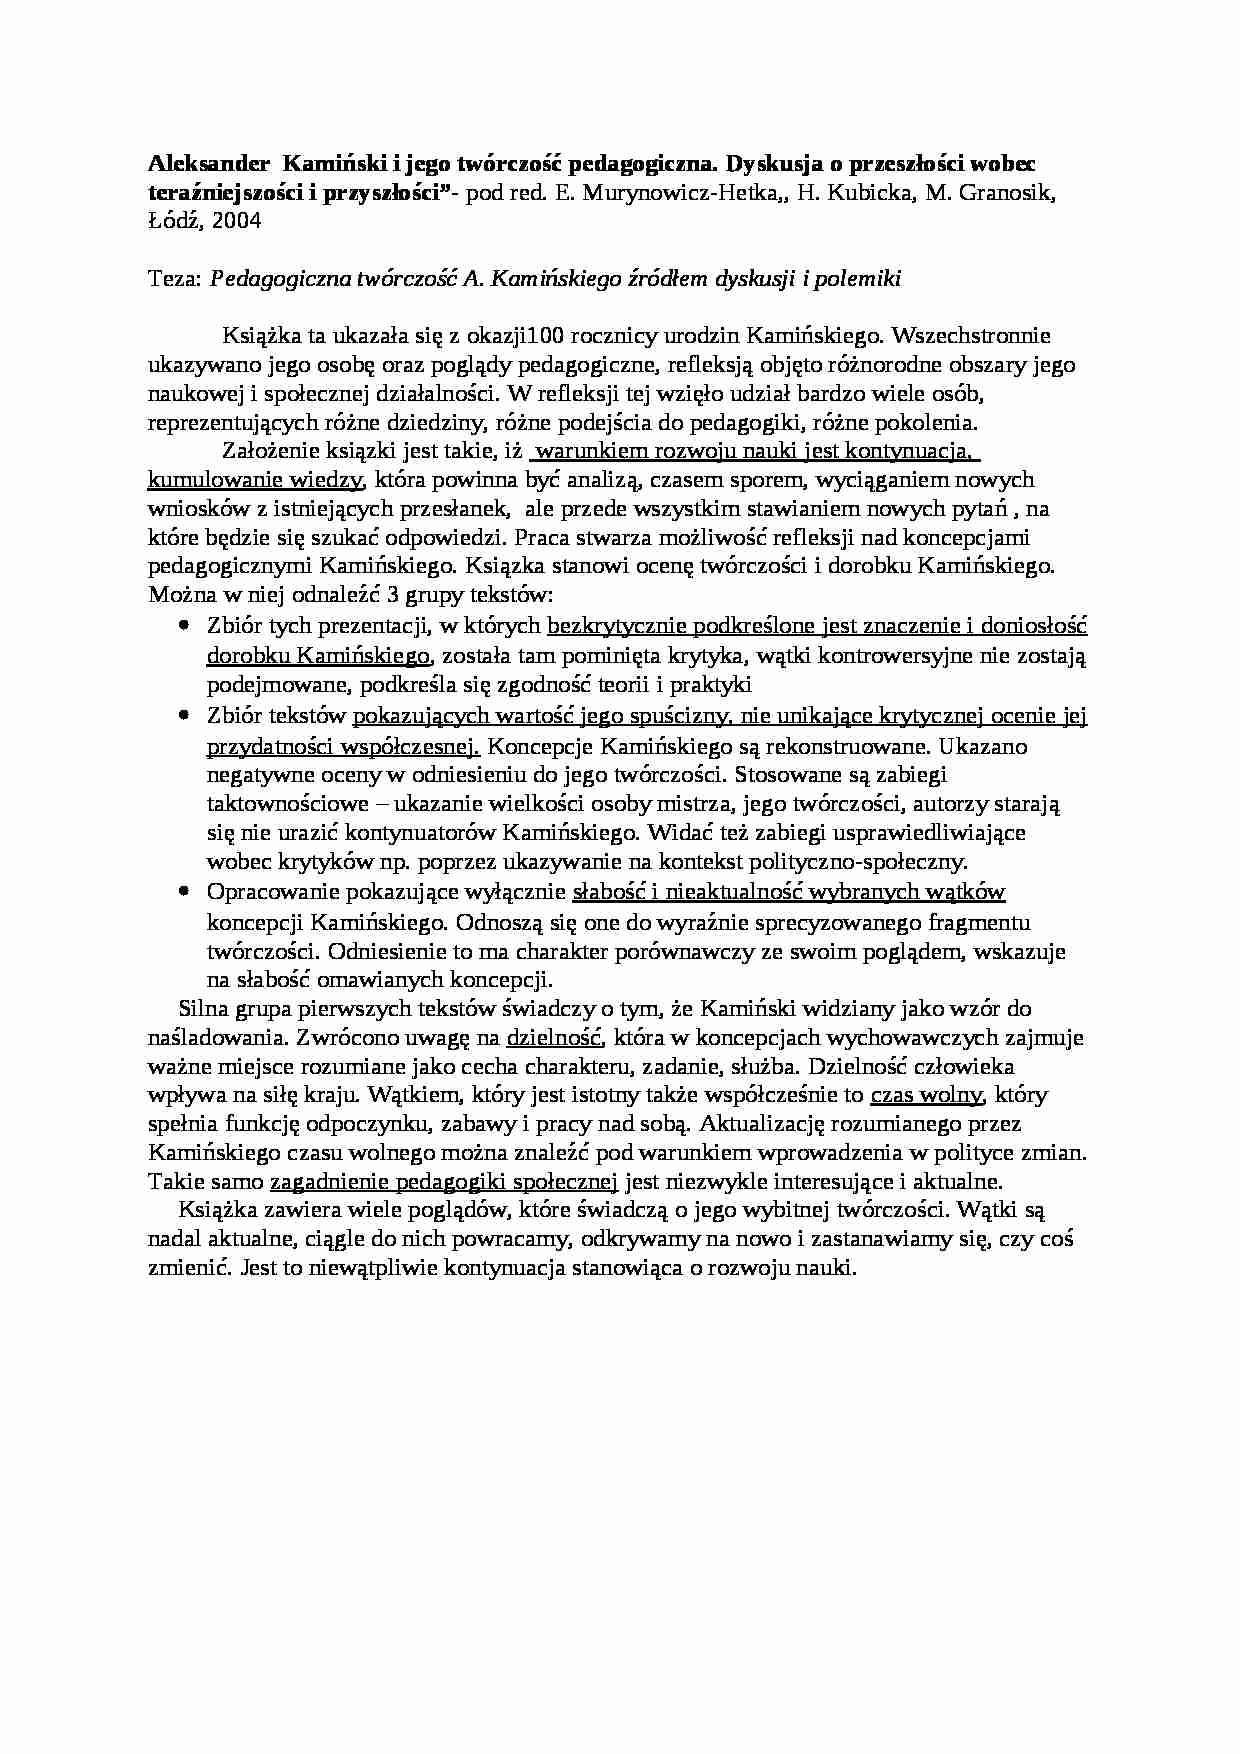 Pedagogiczna twórczość A. Kamińskiego żródłem dyskusji i polemiki-opracowanie - strona 1